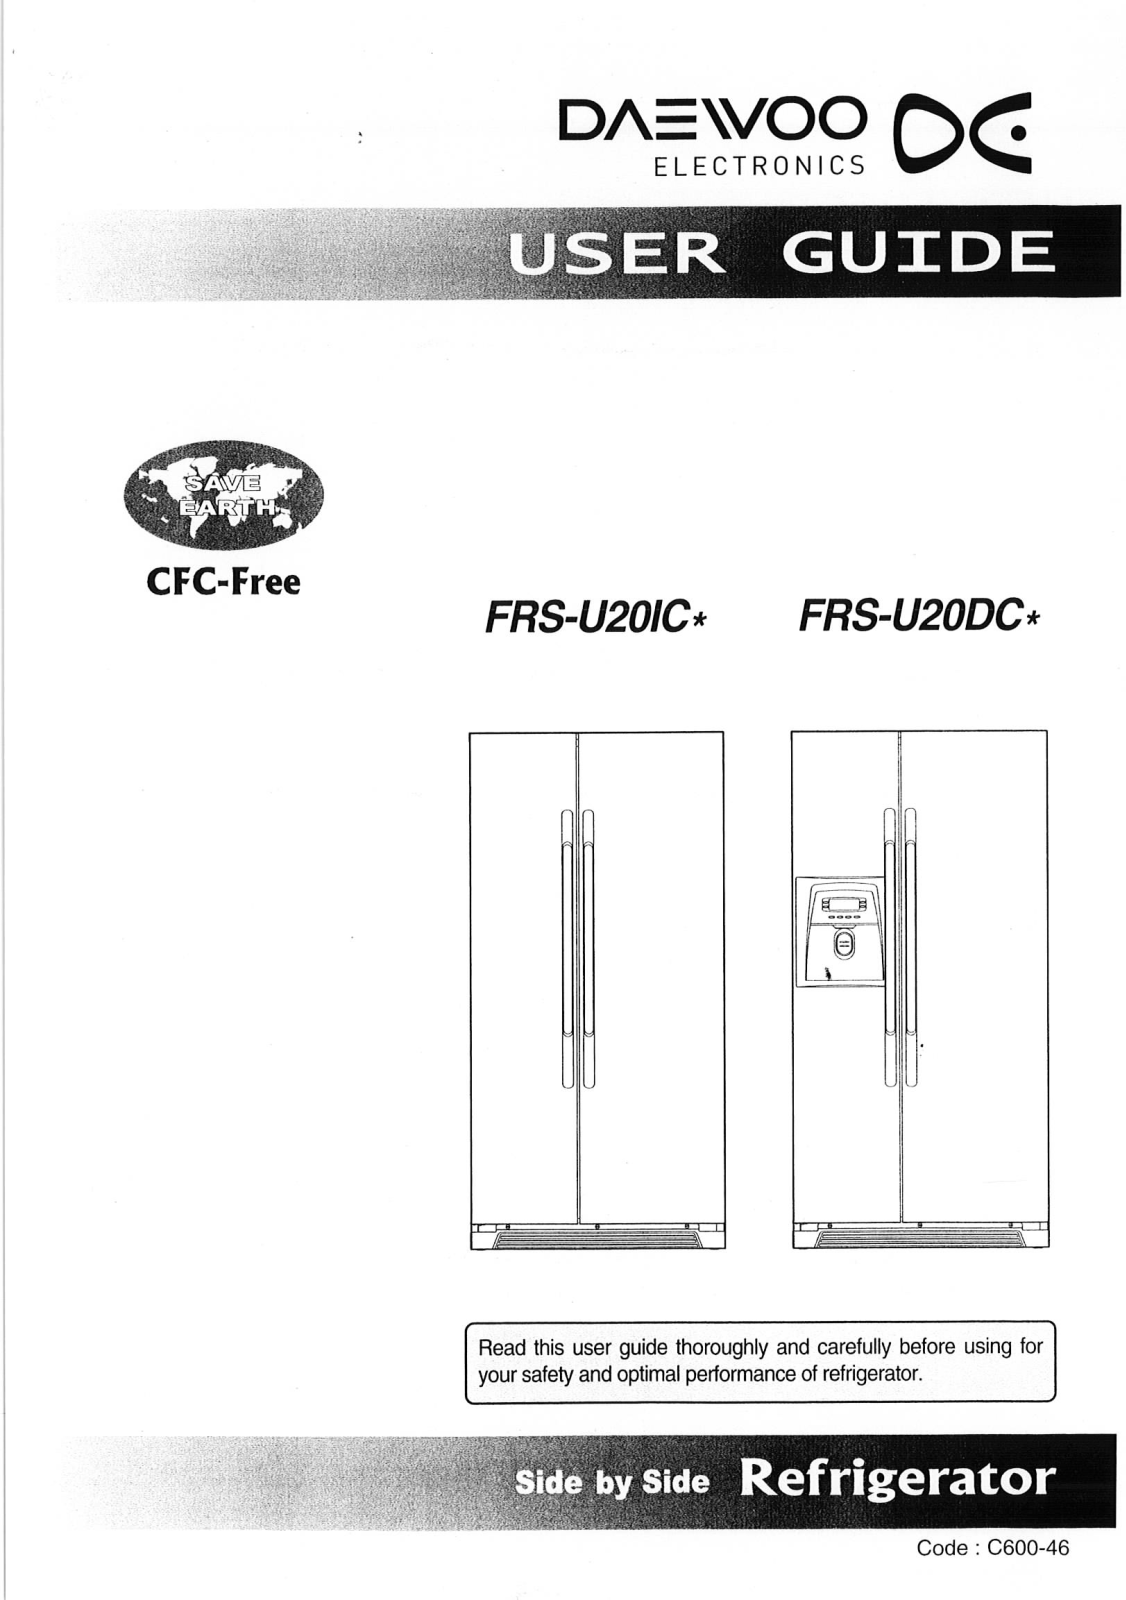 DAEWOO FRSU20DCC User Manual